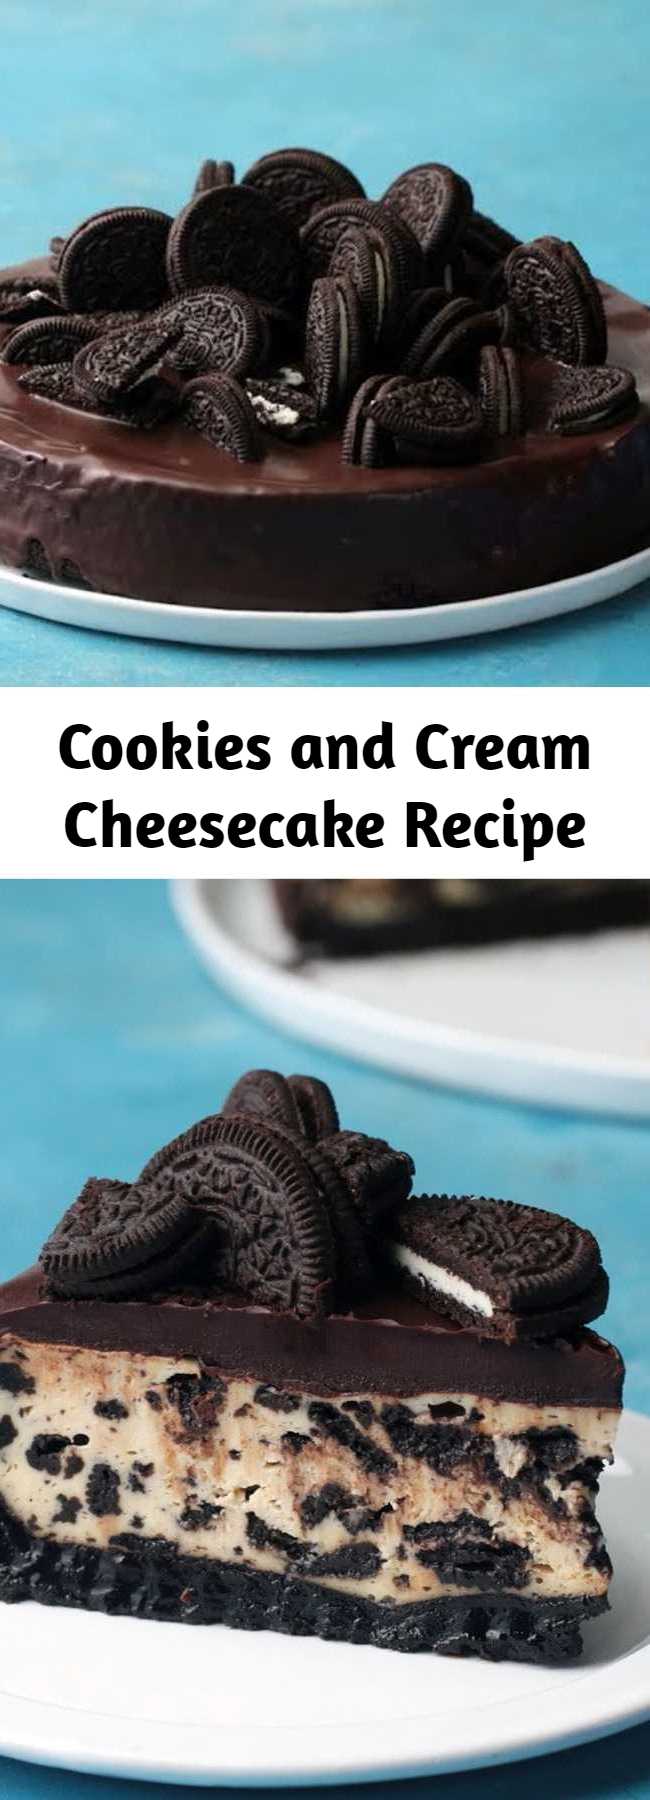 Cookies and Cream Cheesecake Recipe - Cookies and cream make everyone scream!